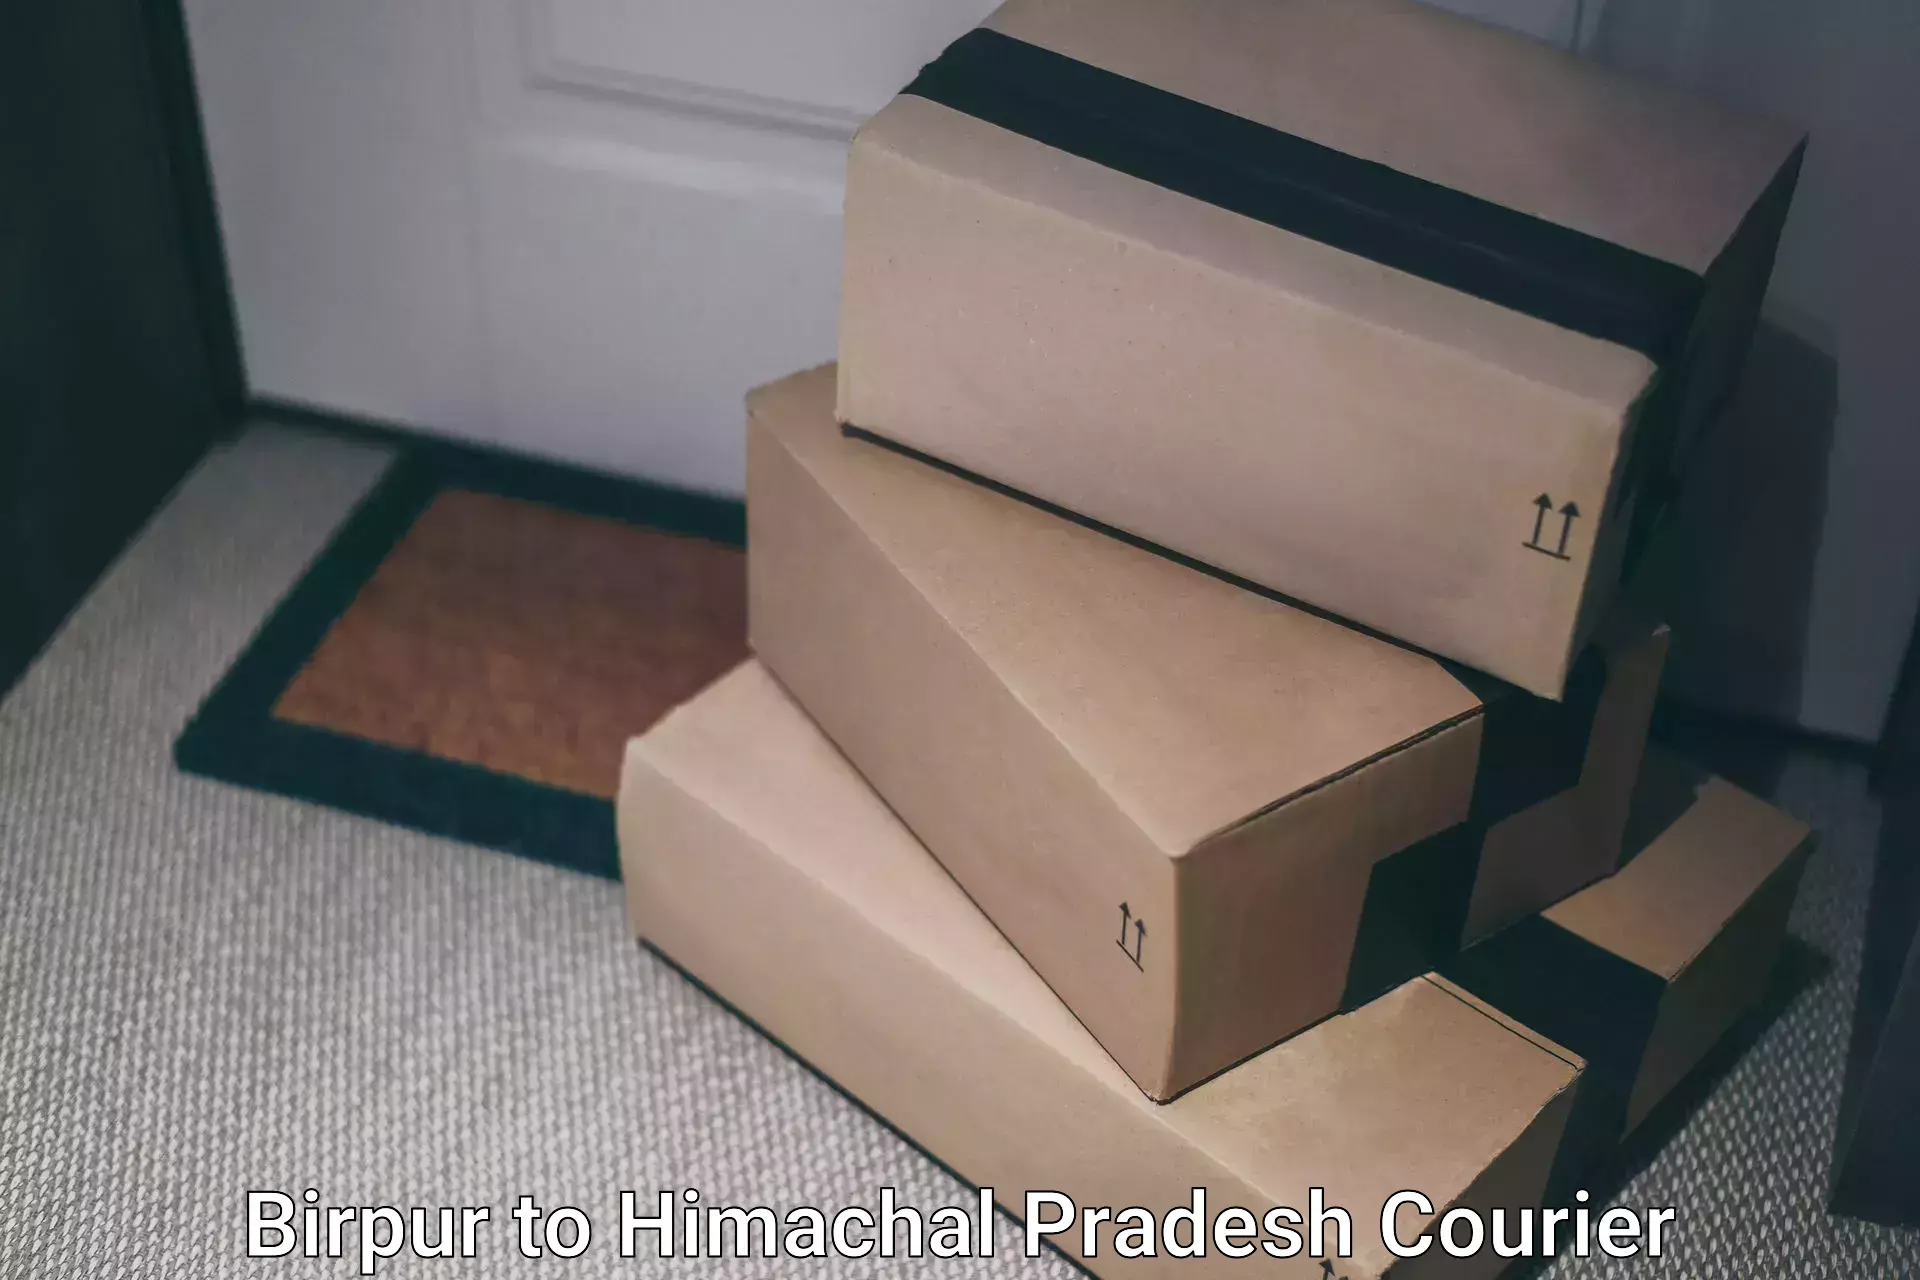 Doorstep delivery service Birpur to Una Himachal Pradesh